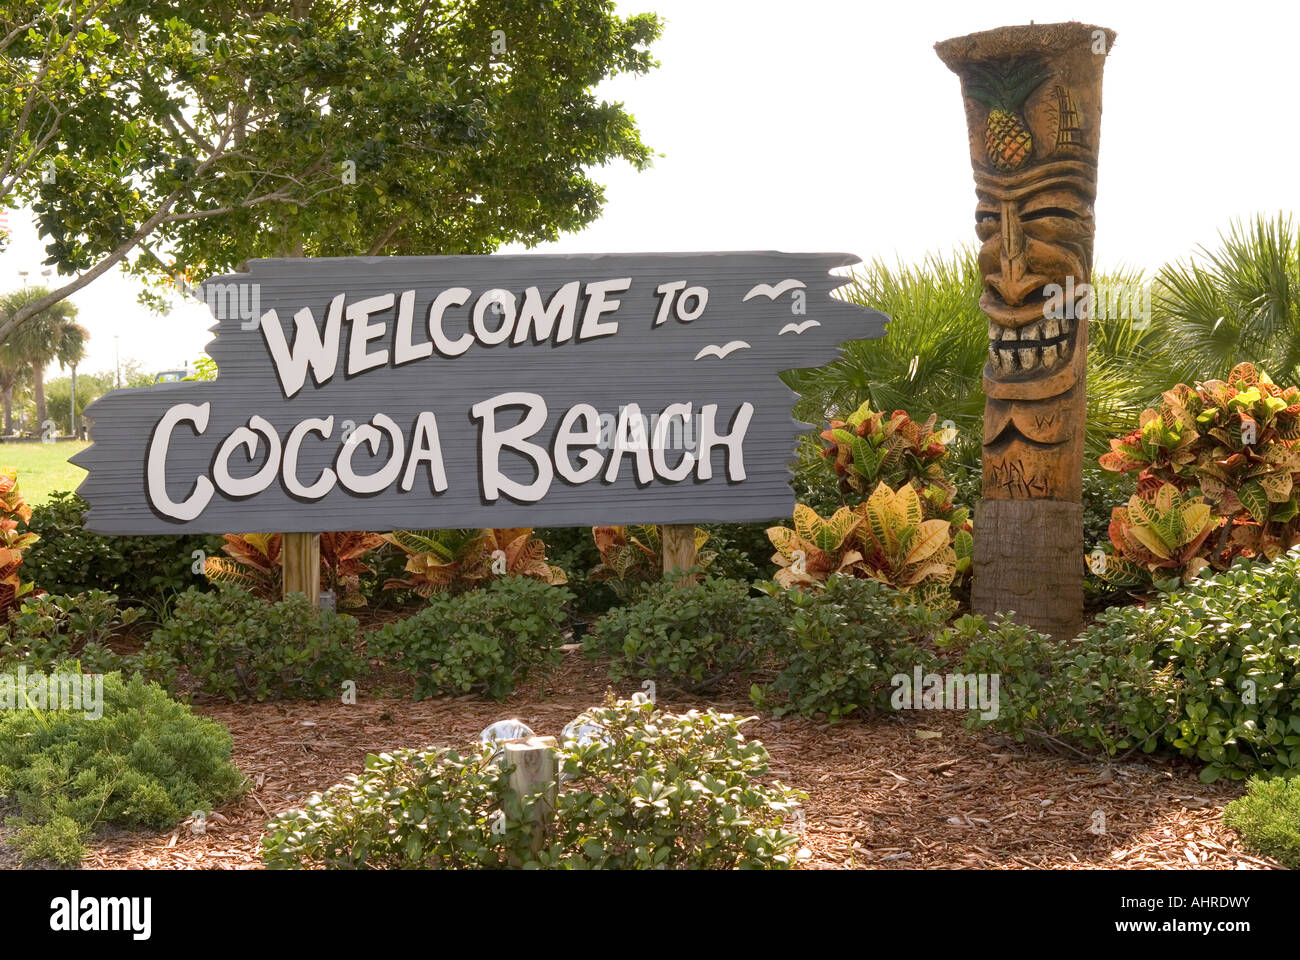 Cocoa Beach Florida Welcome Sign Stock Photo